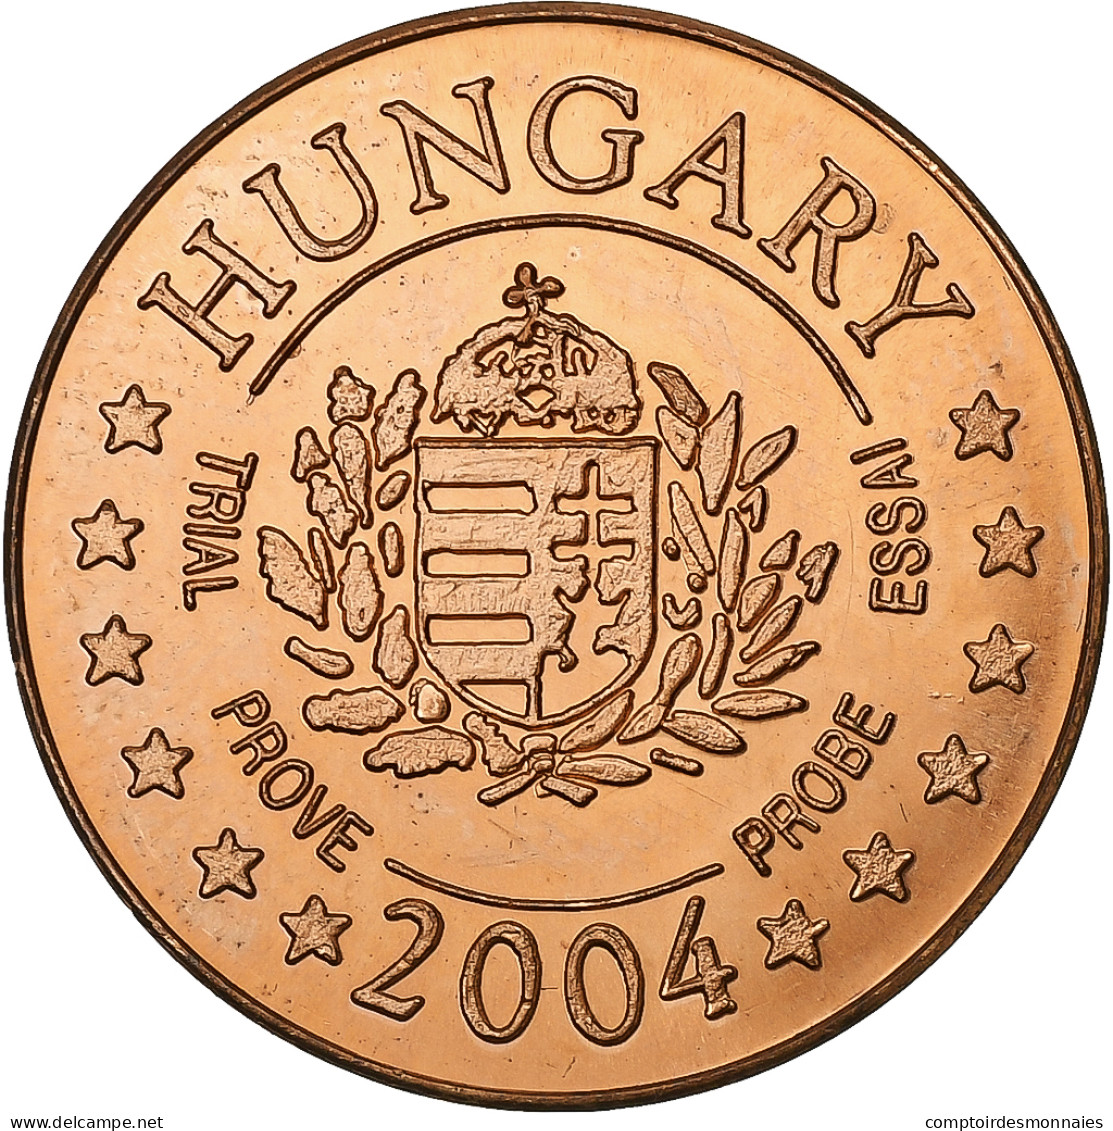 Hongrie, 5 Euro Cent, 2004, Cuivre, SPL+ - Privatentwürfe